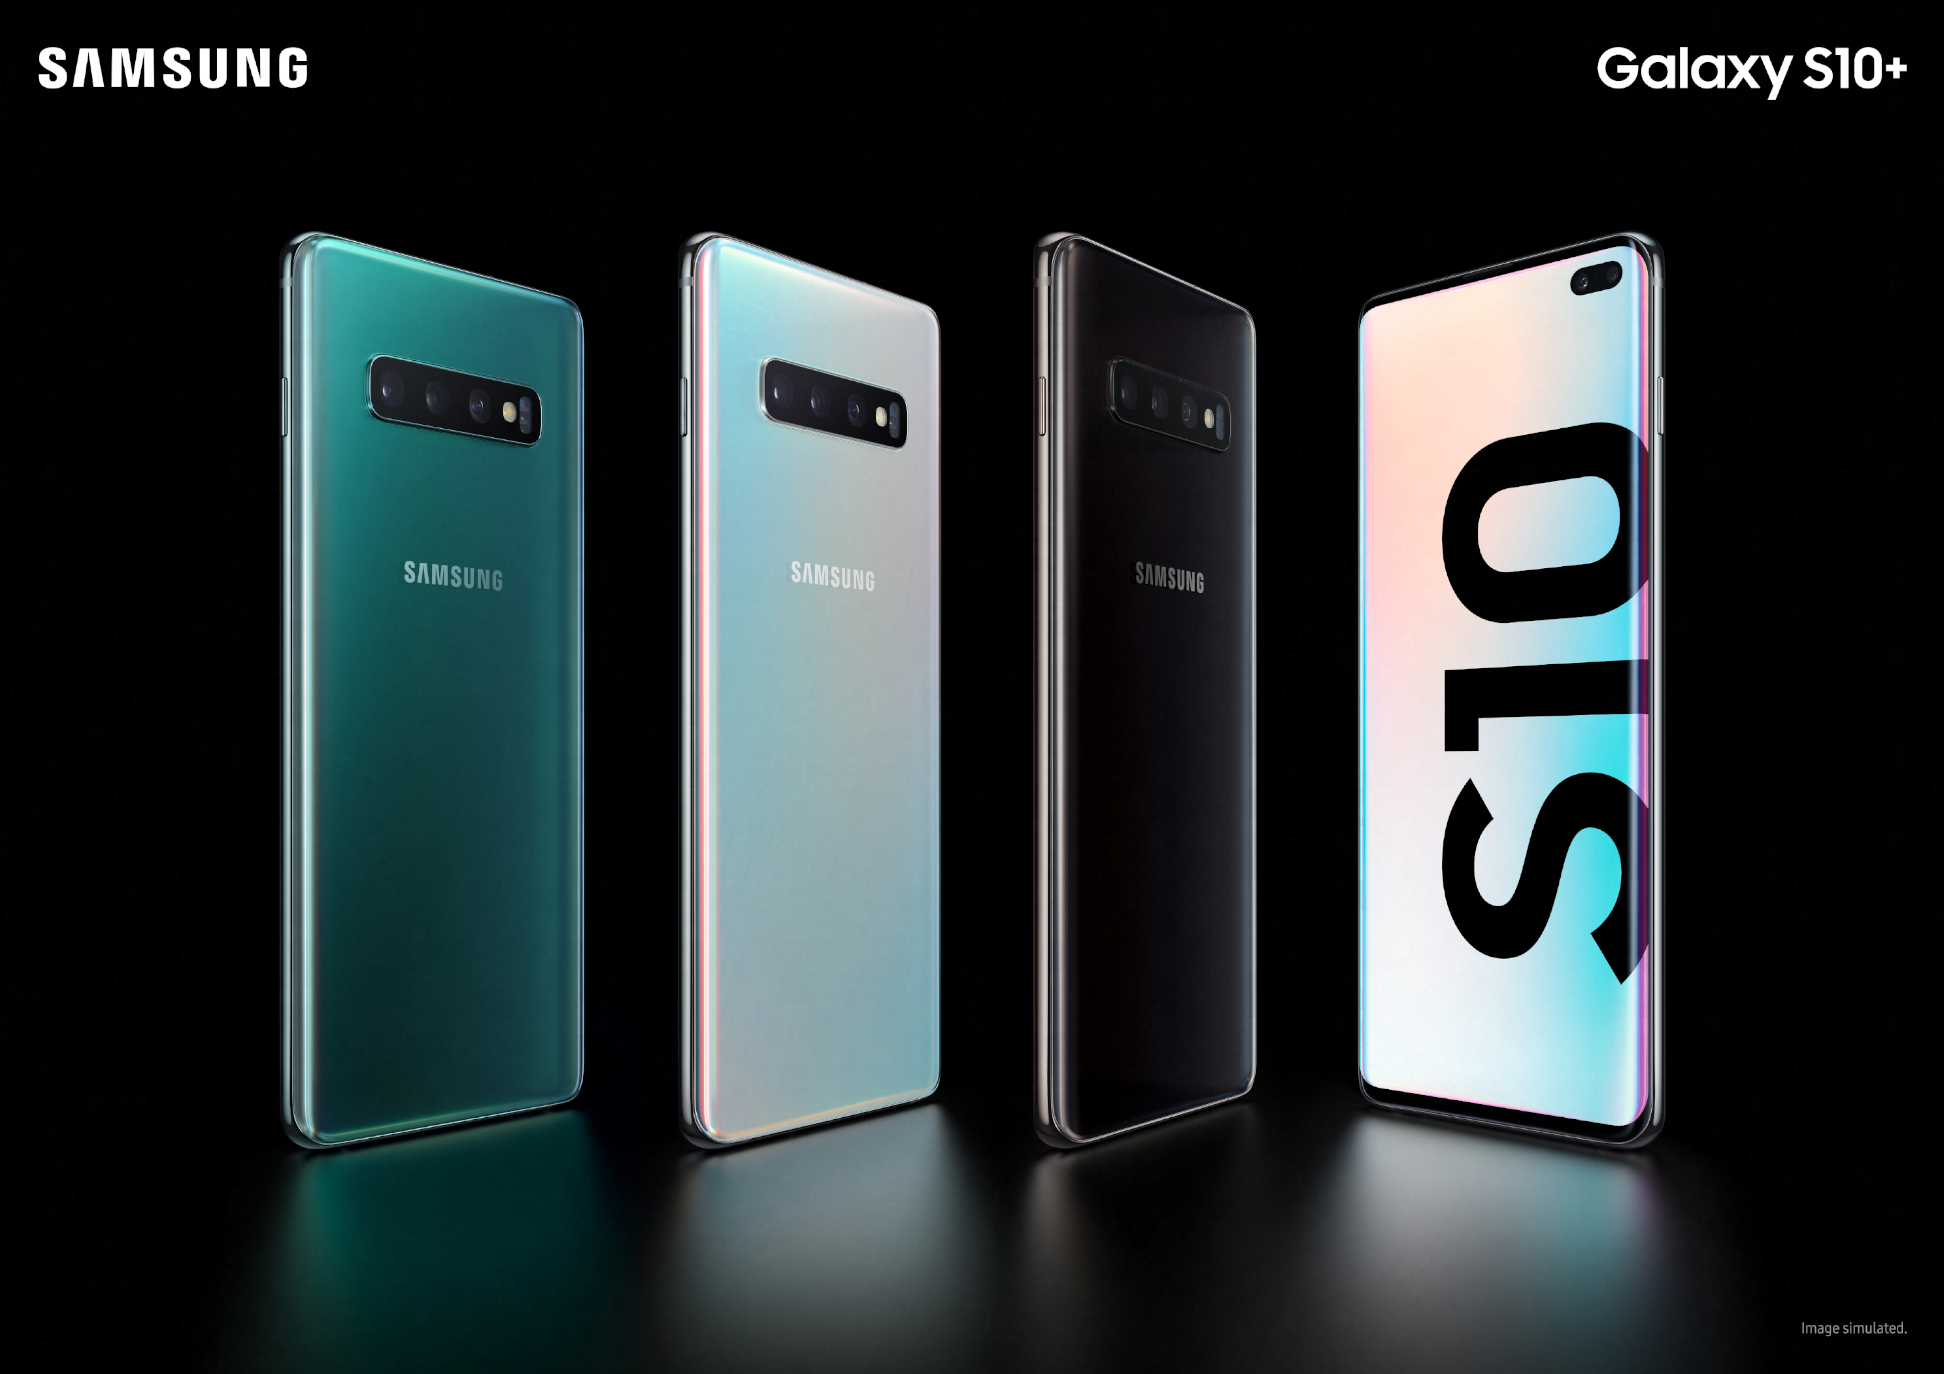 SFR_SFR-Samsung-Galaxy-S10-disponible-en-precommande-chez-sfr_21022019_BLOG-Samsung-Galaxy-002.png